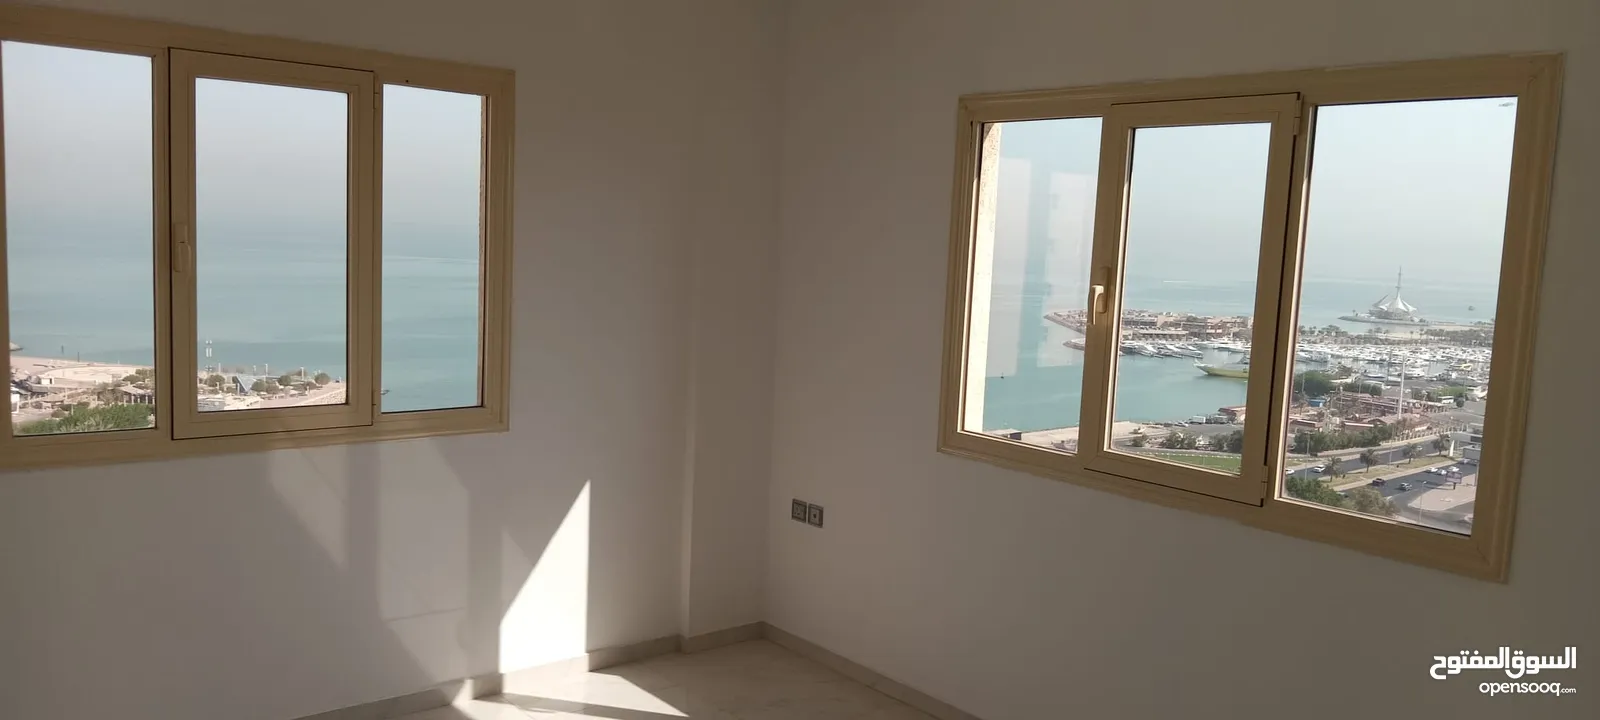 شقة سكنية للايجار فى Byblos complex السالميةقطعة9 بالدور17(Sea view)